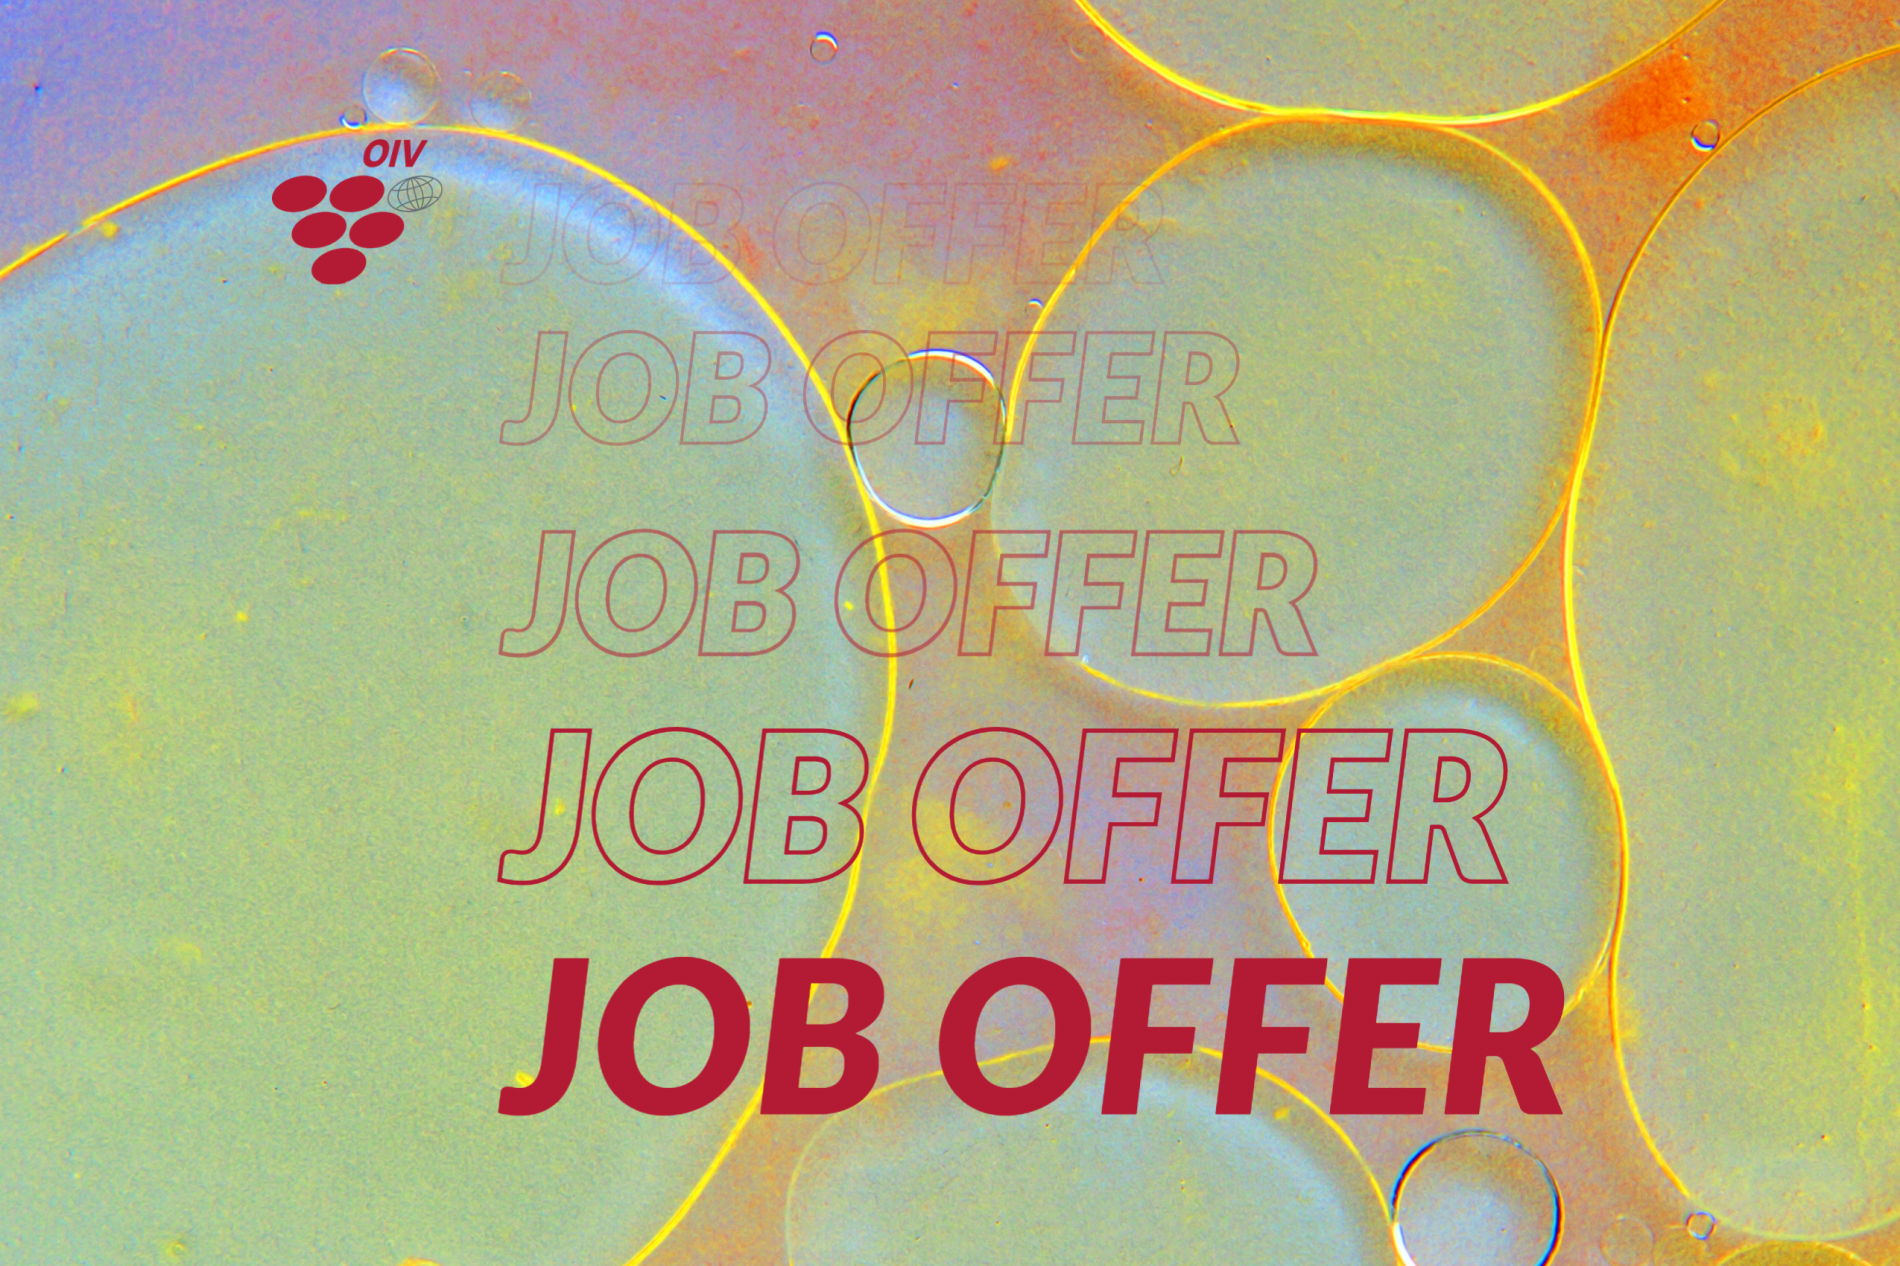 OIV Job Offer